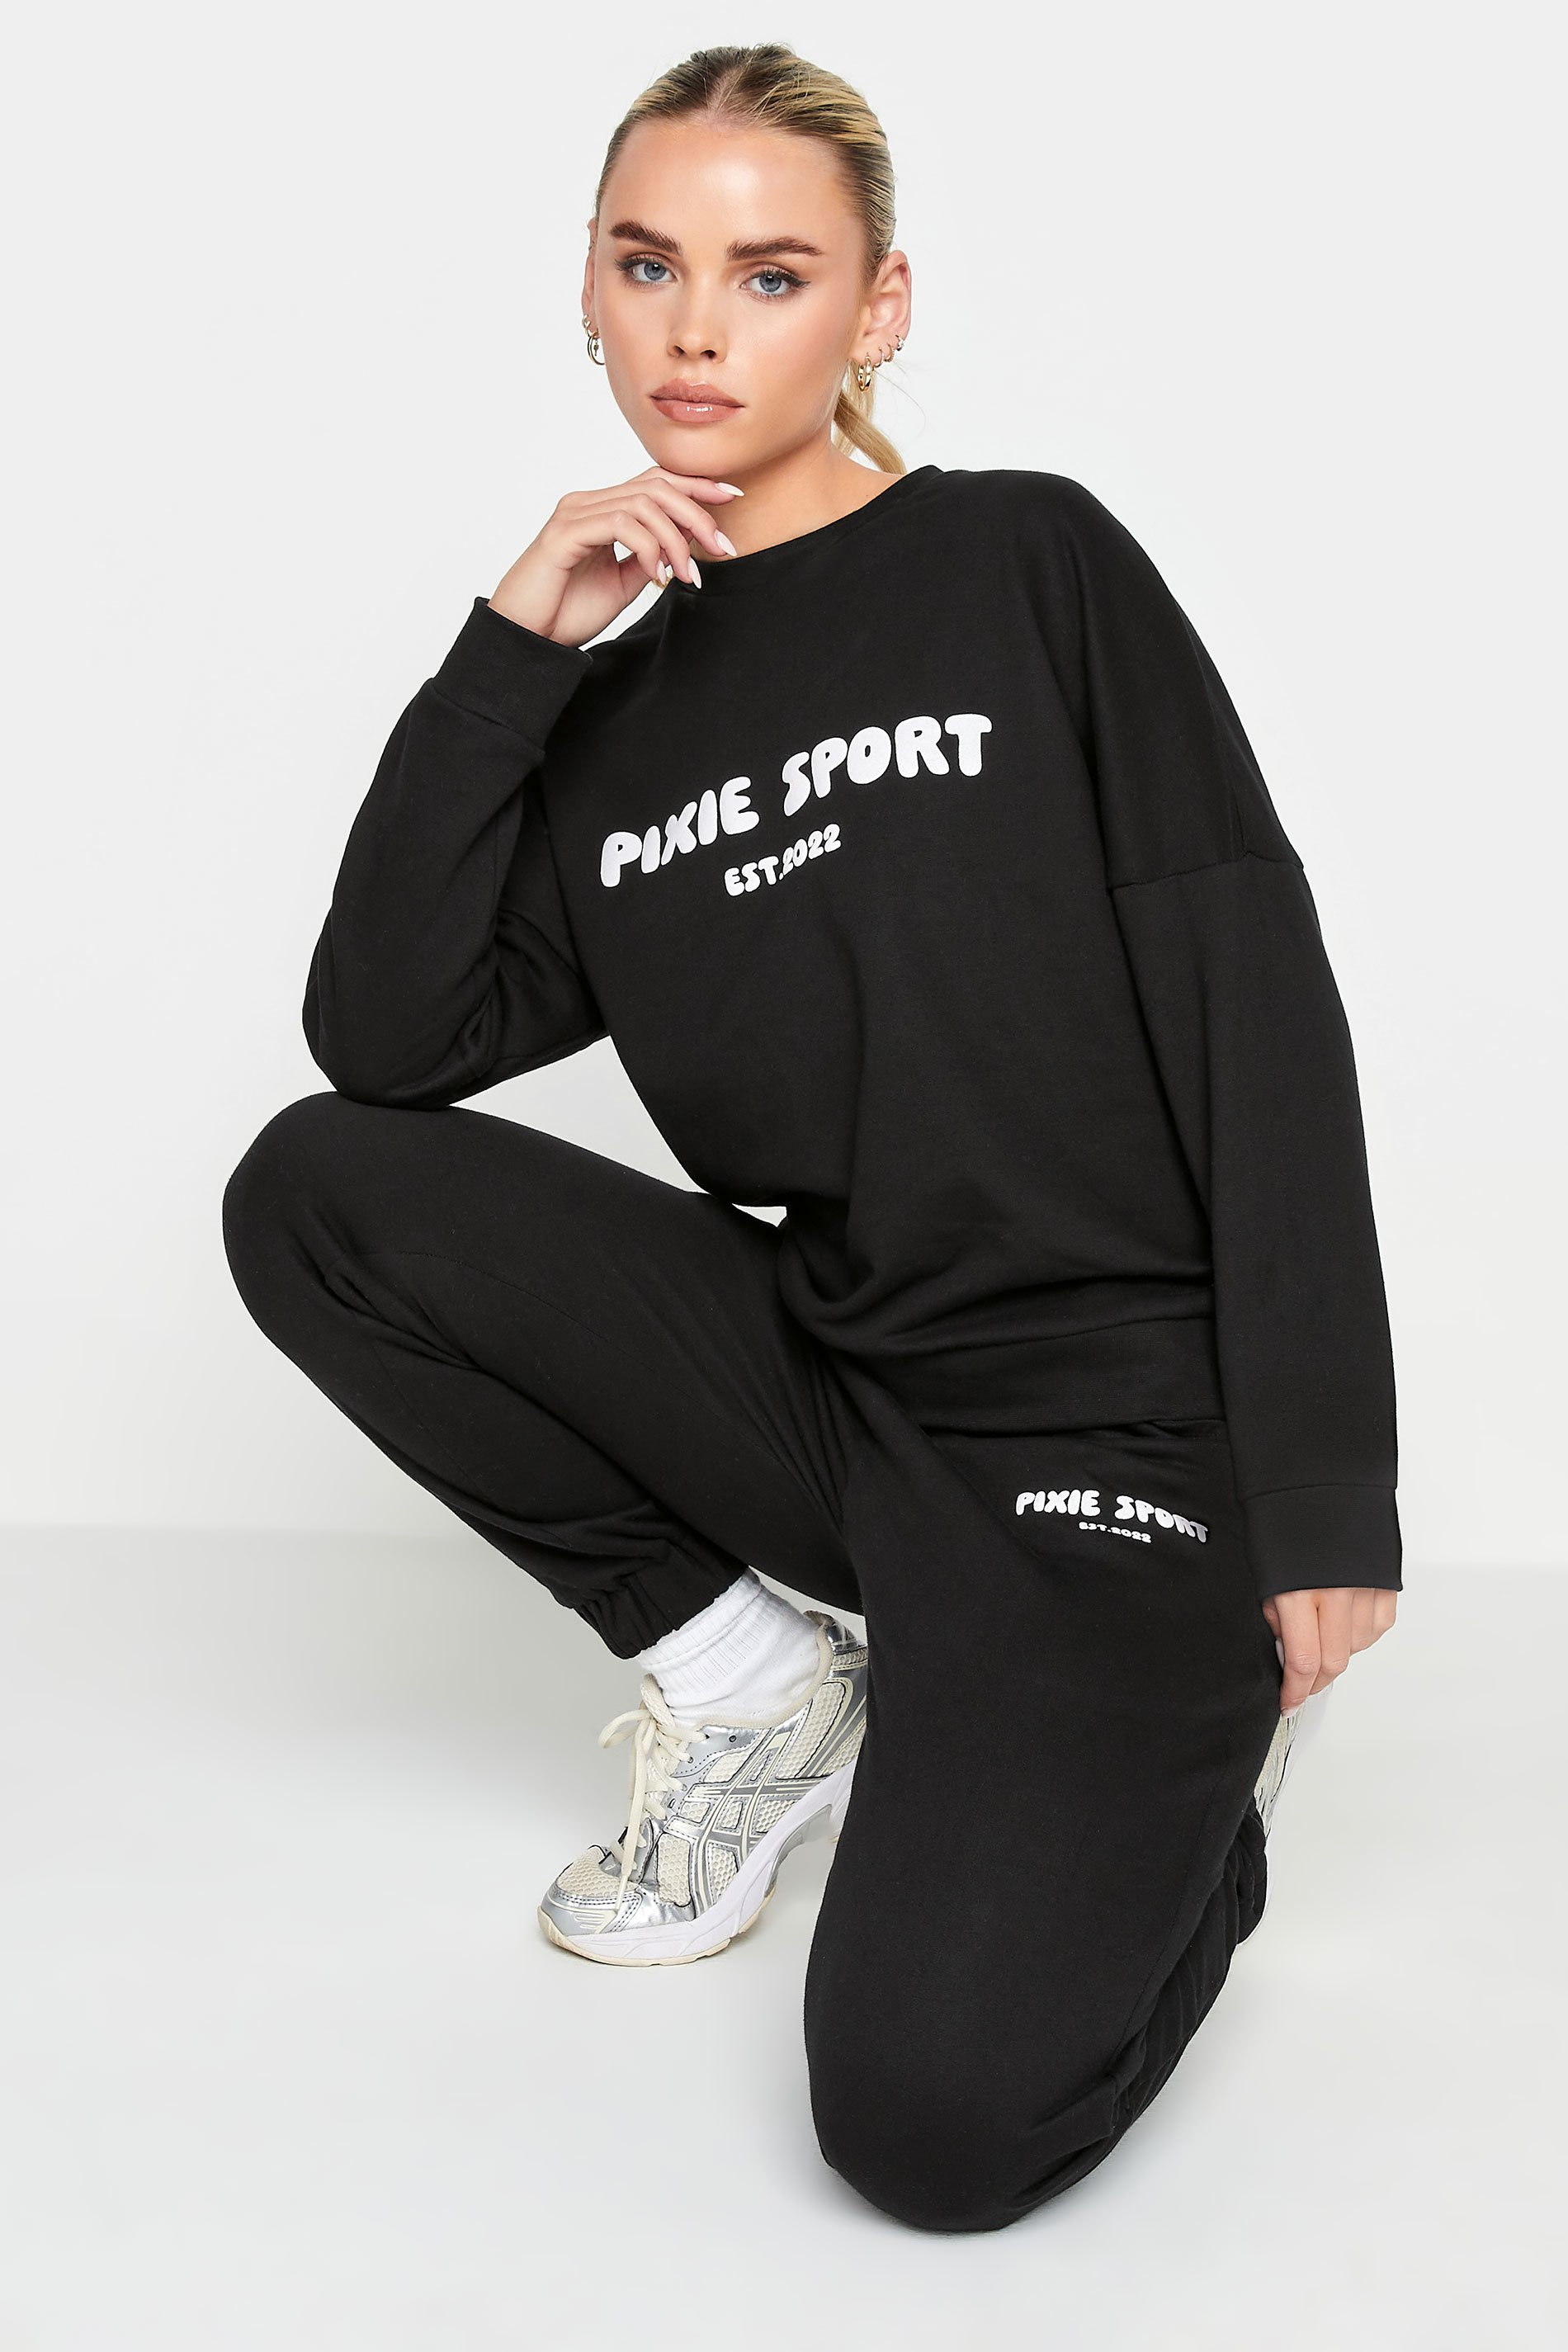 PixieGirl Petite Black 'Pixie Sport' Slogan Sweatshirt | PixieGirl  2